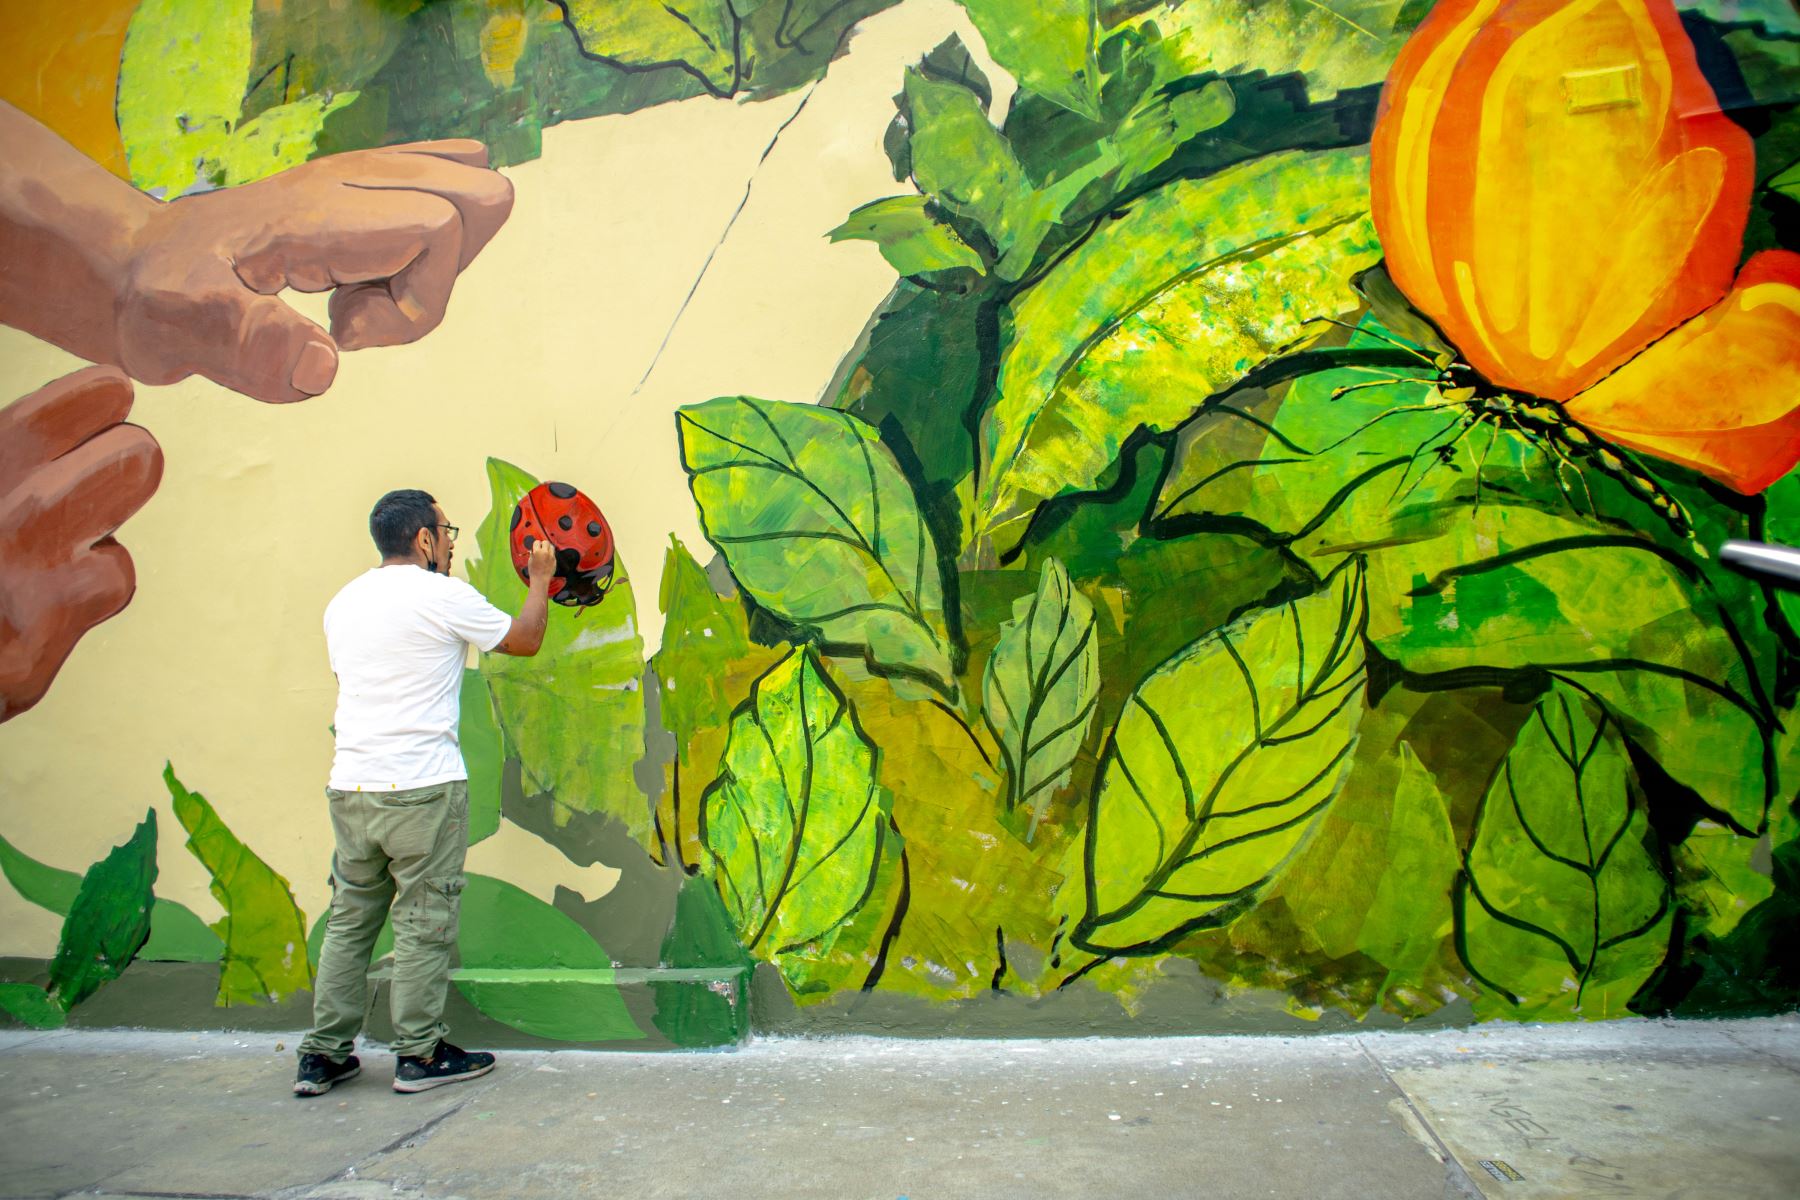 Artista Marko Franco Domenak estrena mural "Momentos".